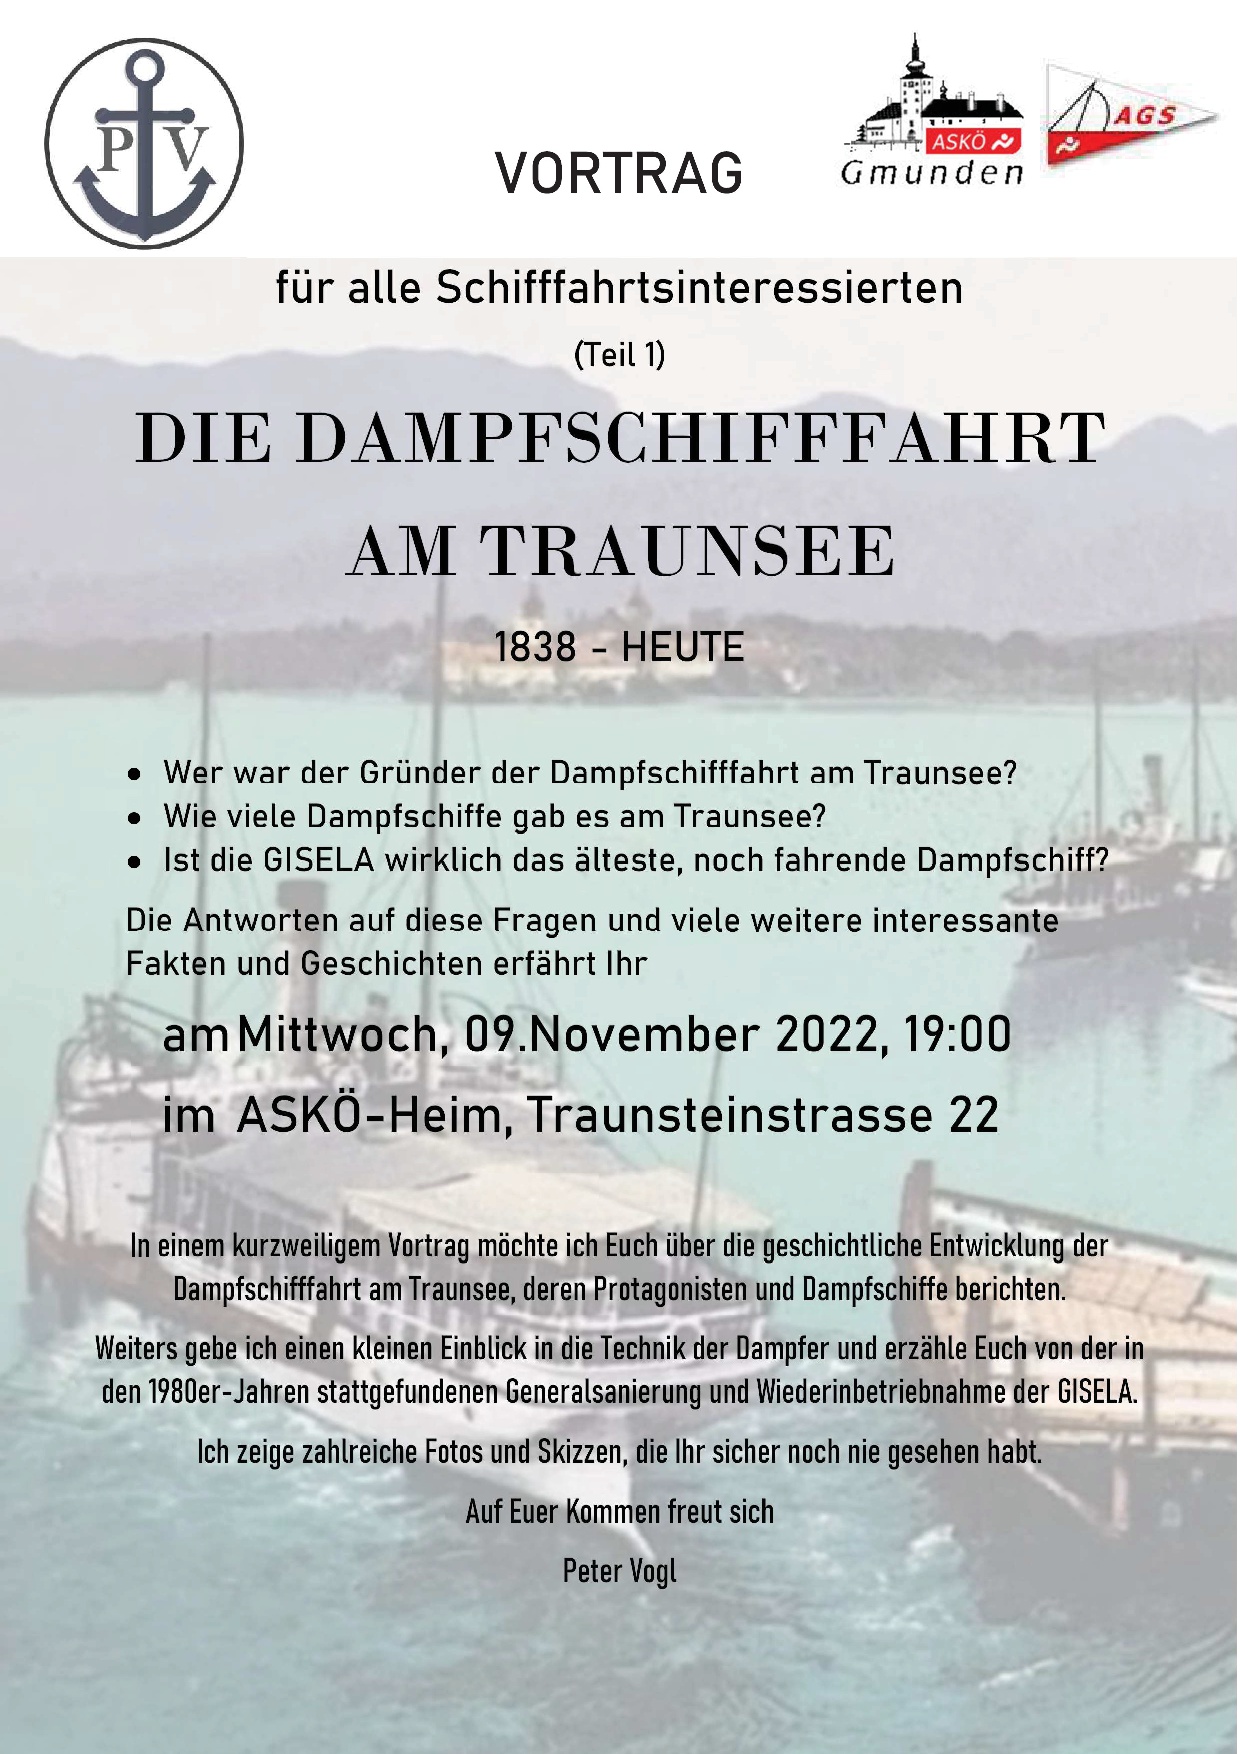 Novemberstammtisch – Vortrag „Dampfschifffahrt am Traunsee“